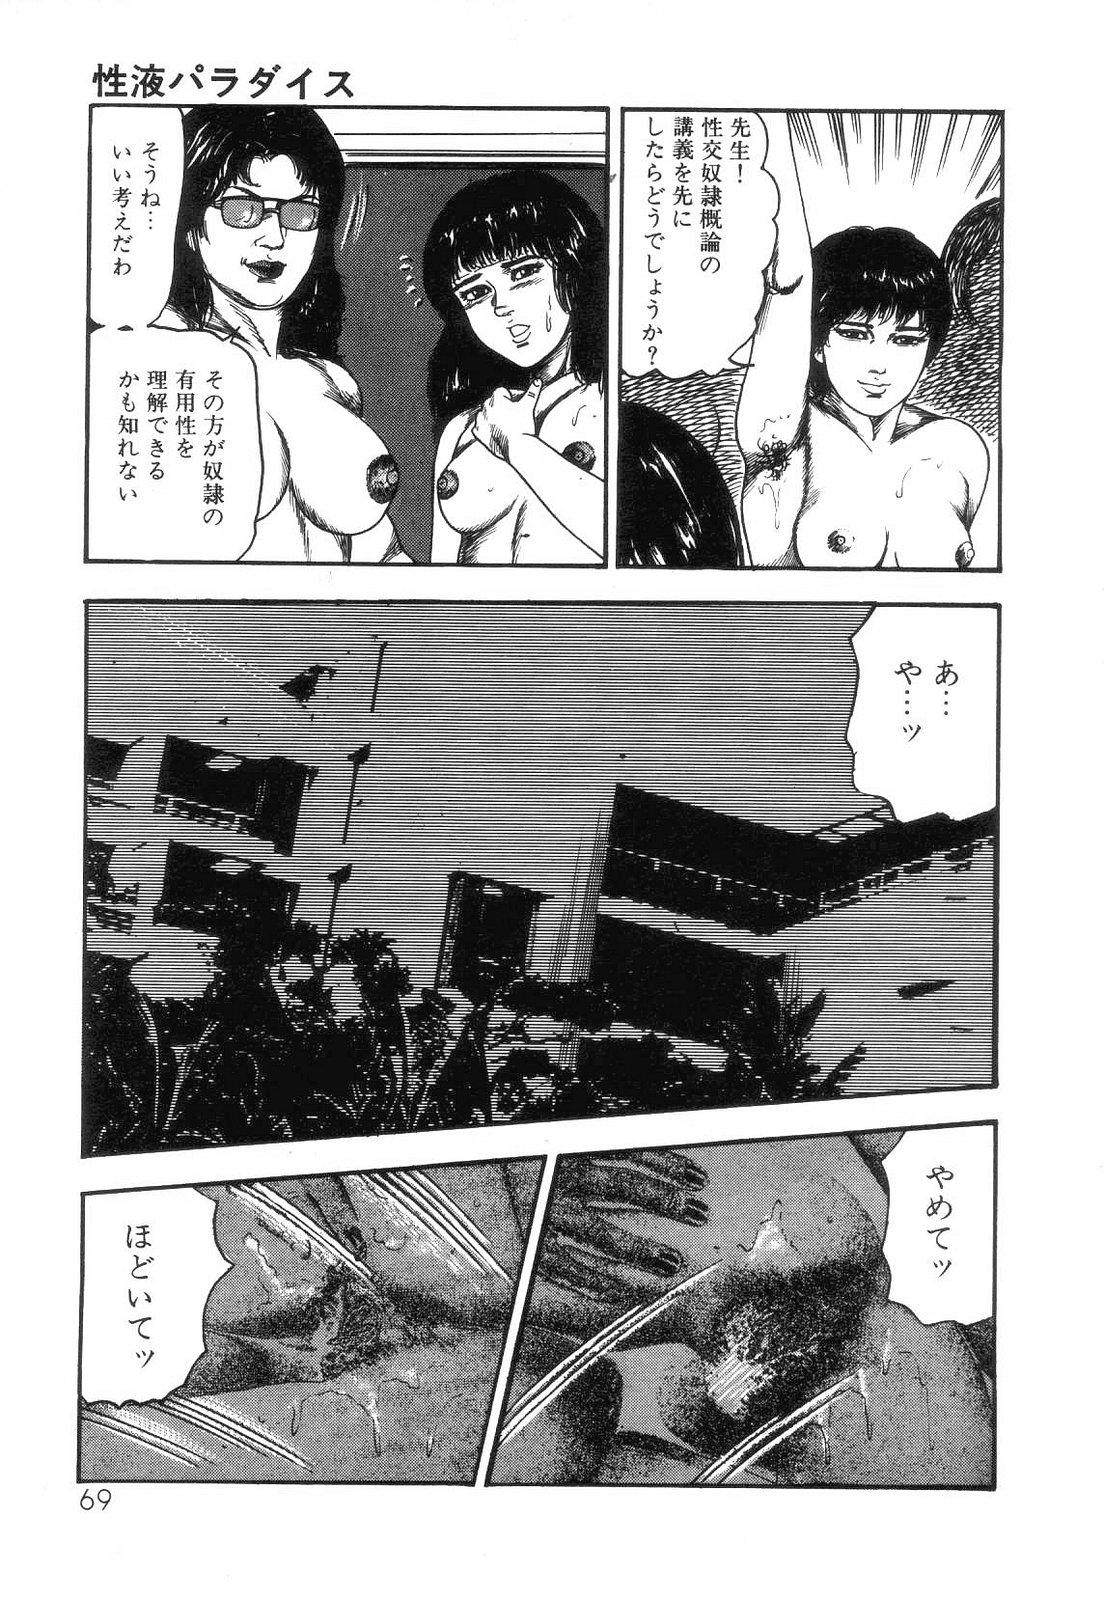 Shiro no Mokushiroku Vol. 4 - Bichiku Karen no Shou 70